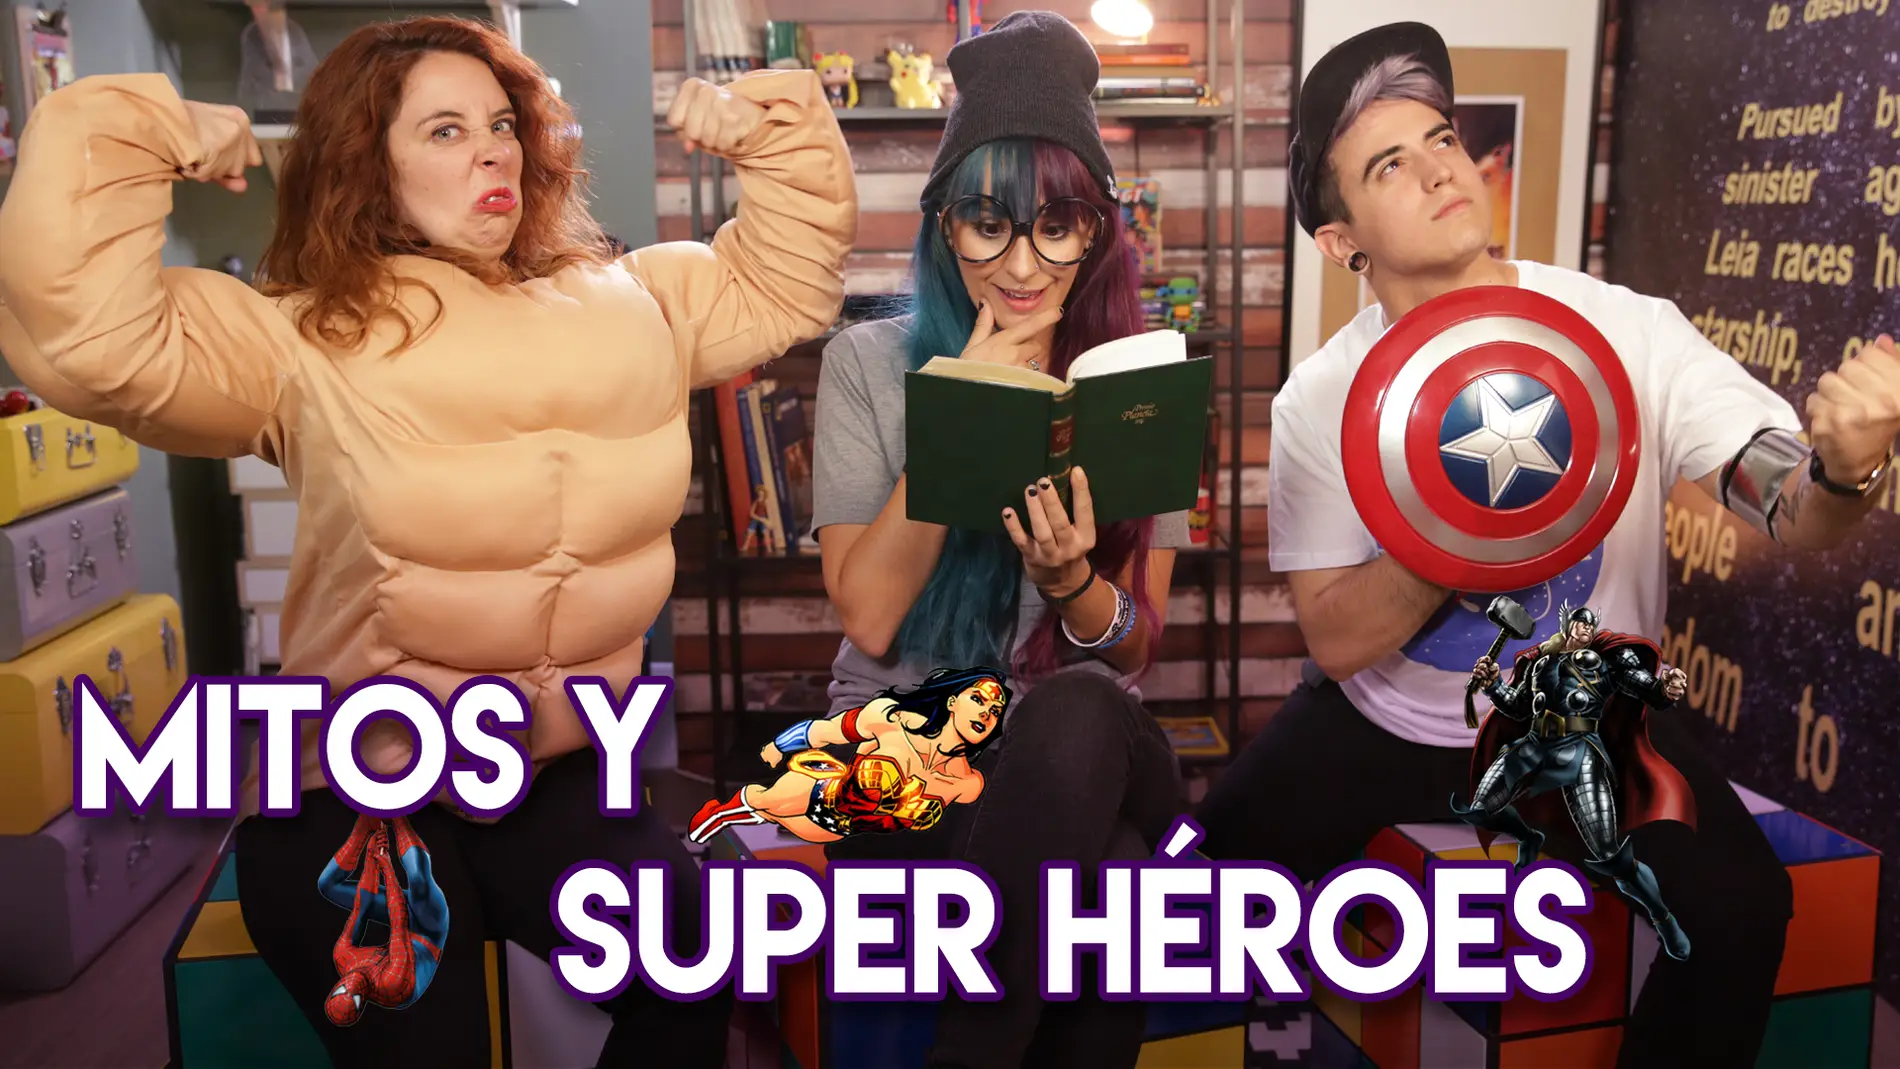 Mitos y Super héroes